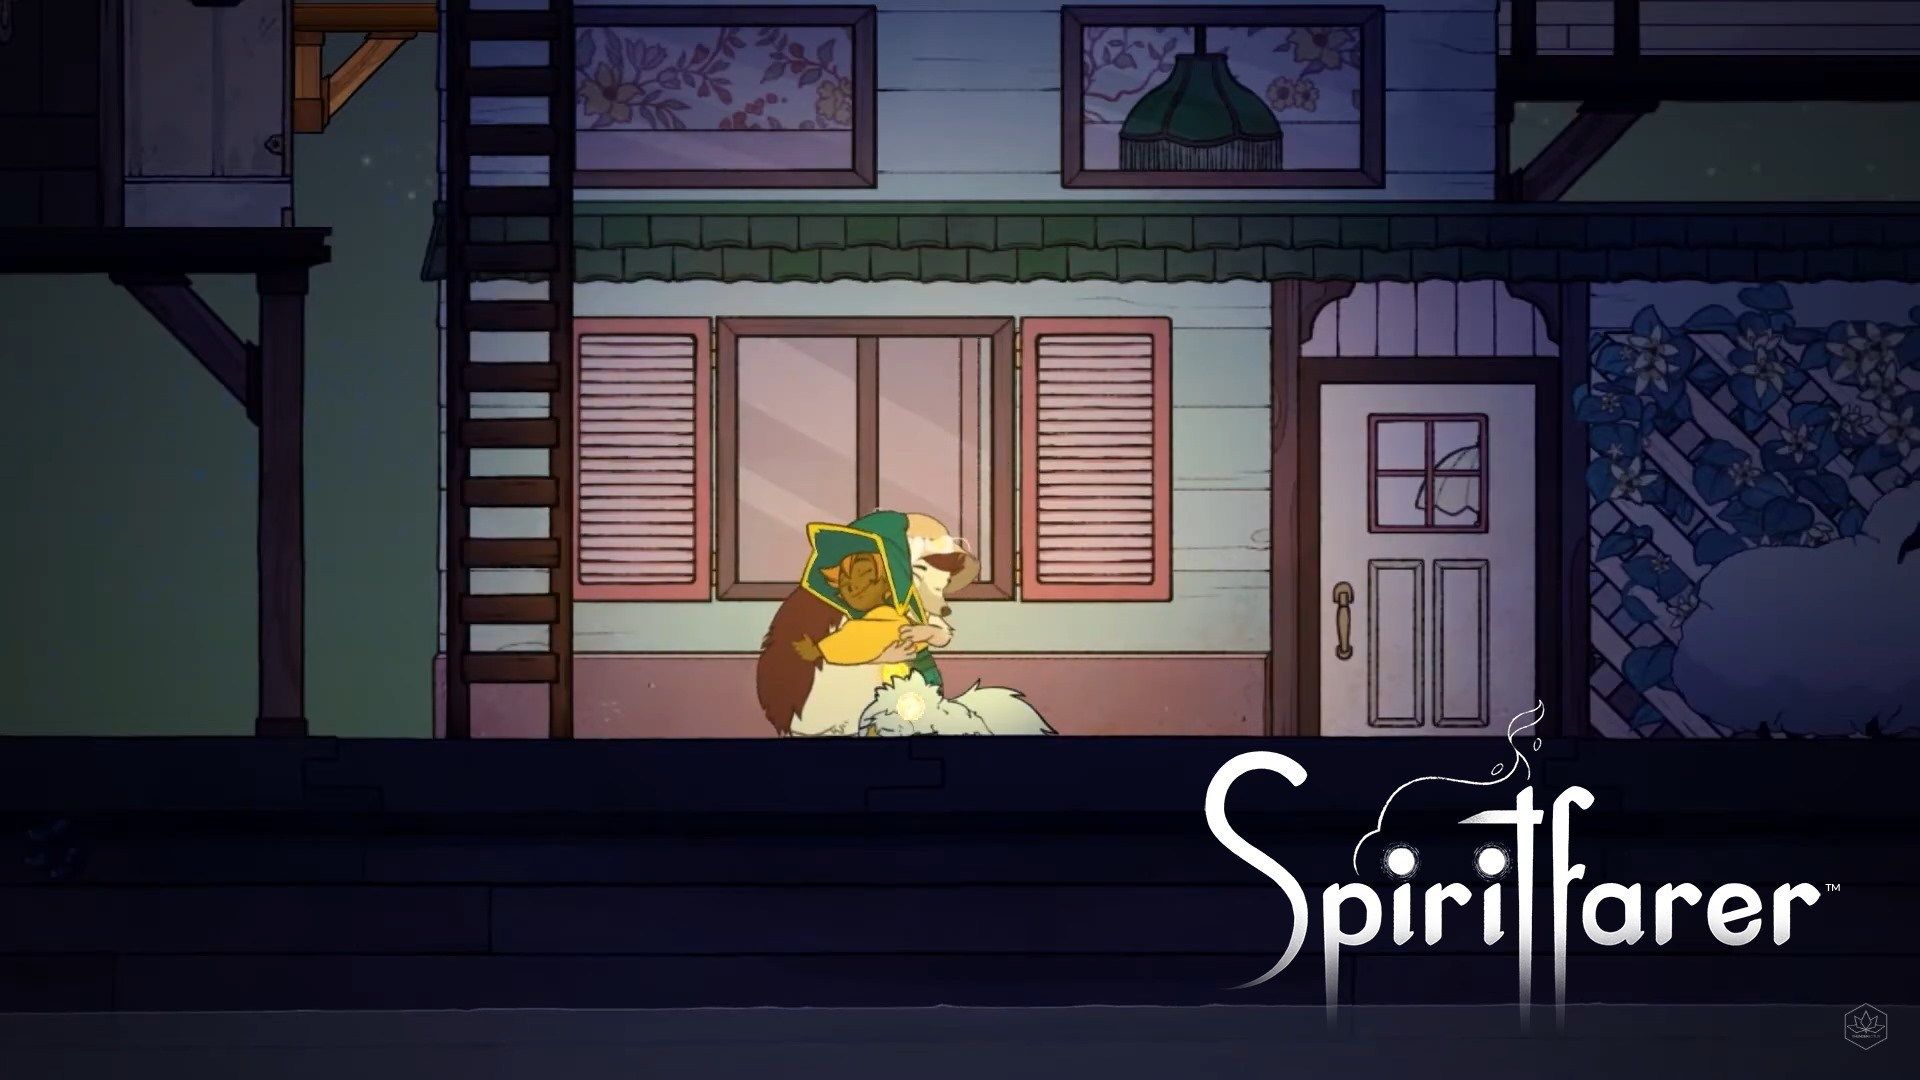 Spiritfarer shows off first Gameplay with Teaser!